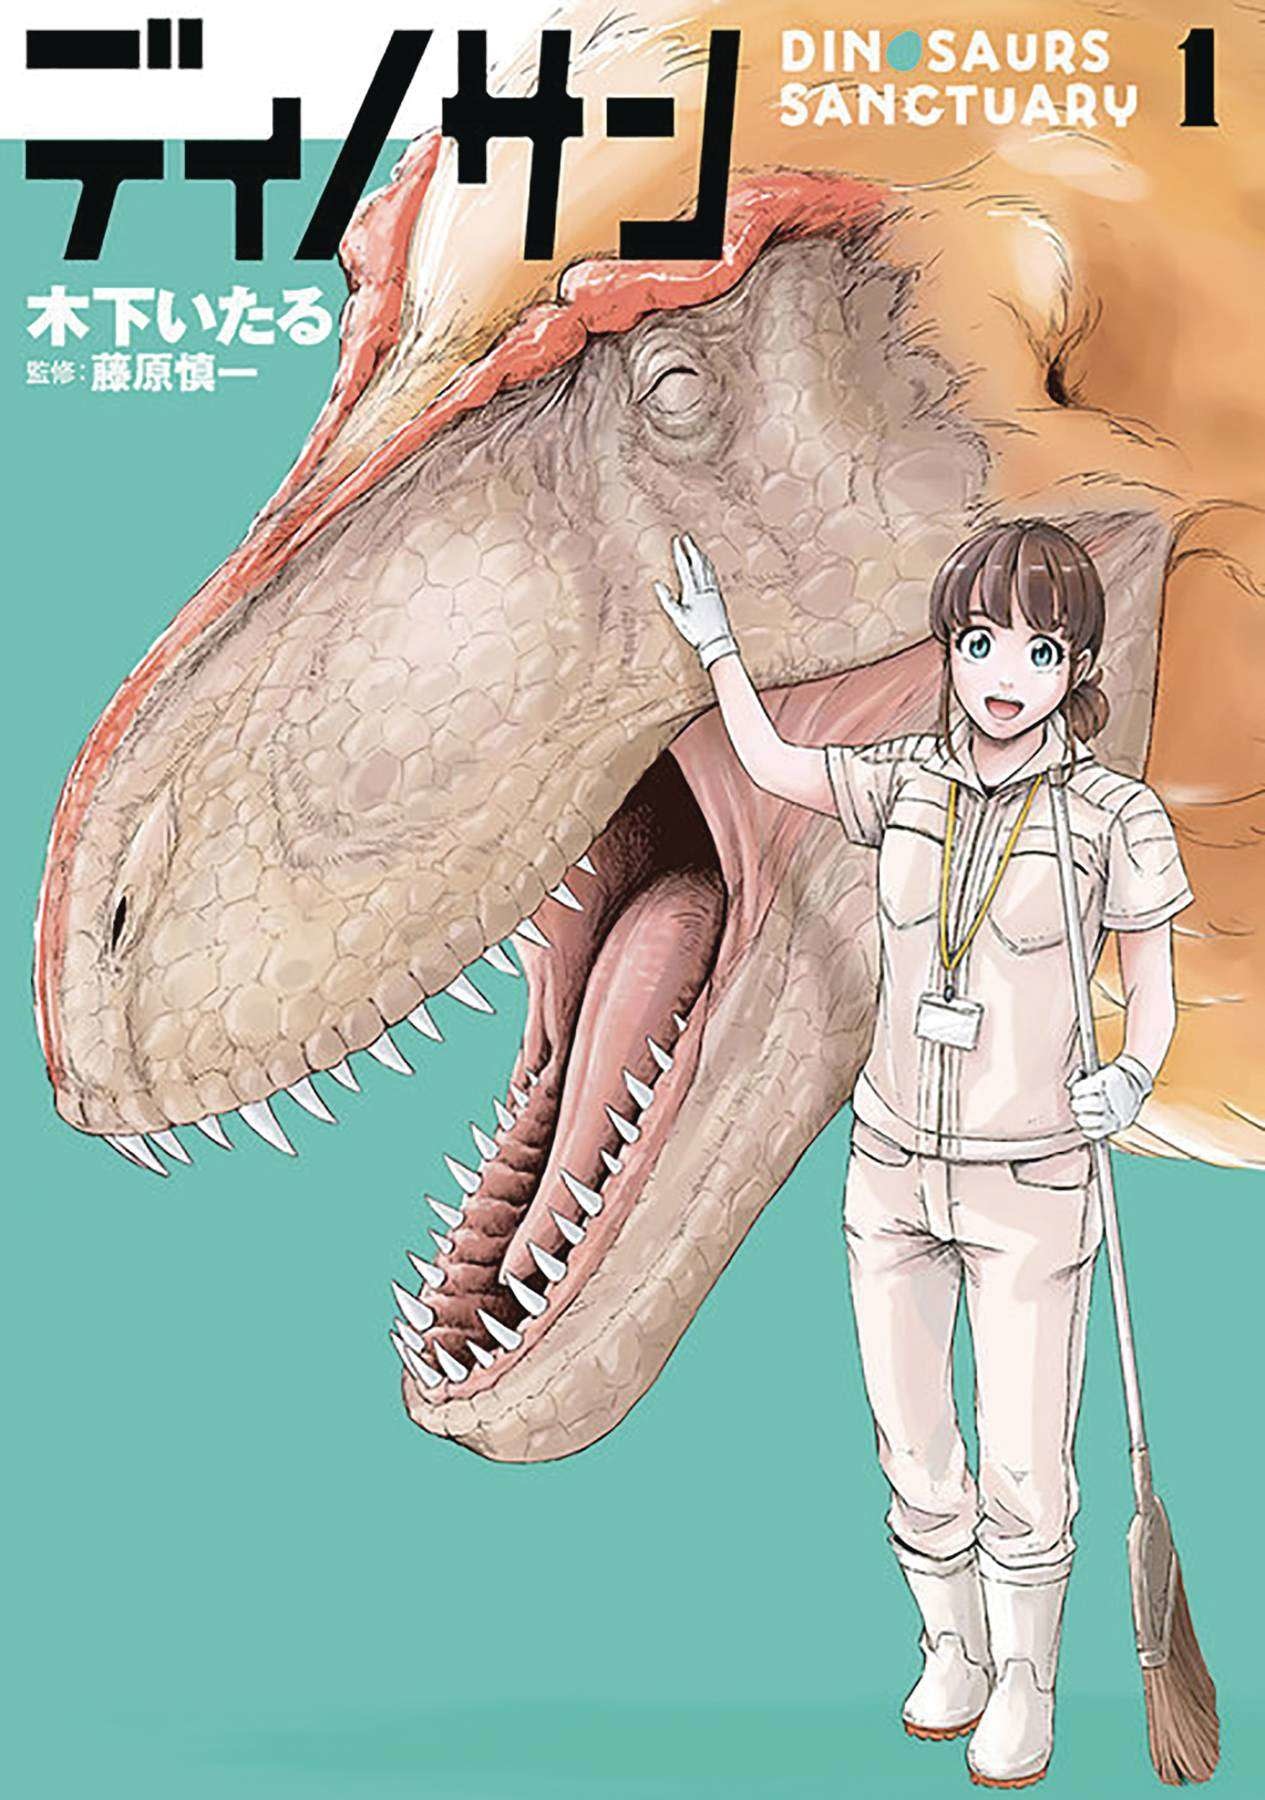 Seven Seas Entertainment Dinosaur Sanctuary Gn Vol 01